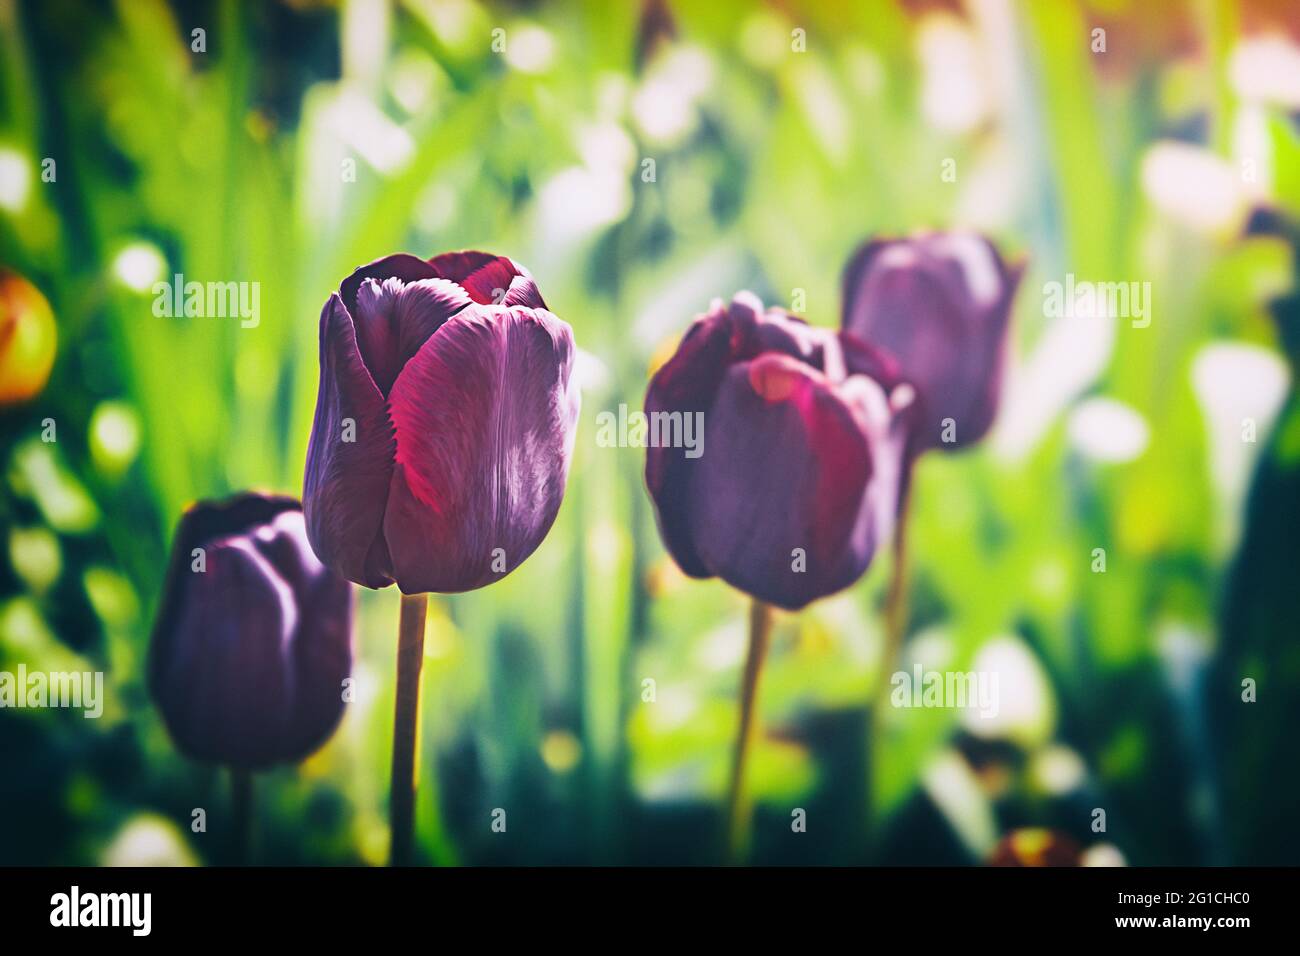 Un tocco di emozioni, moody, colorful e bello flowerbed dei tulipani nell'aldilà. Gruga Park Essen. Tristezza e solitudine. Foto Stock